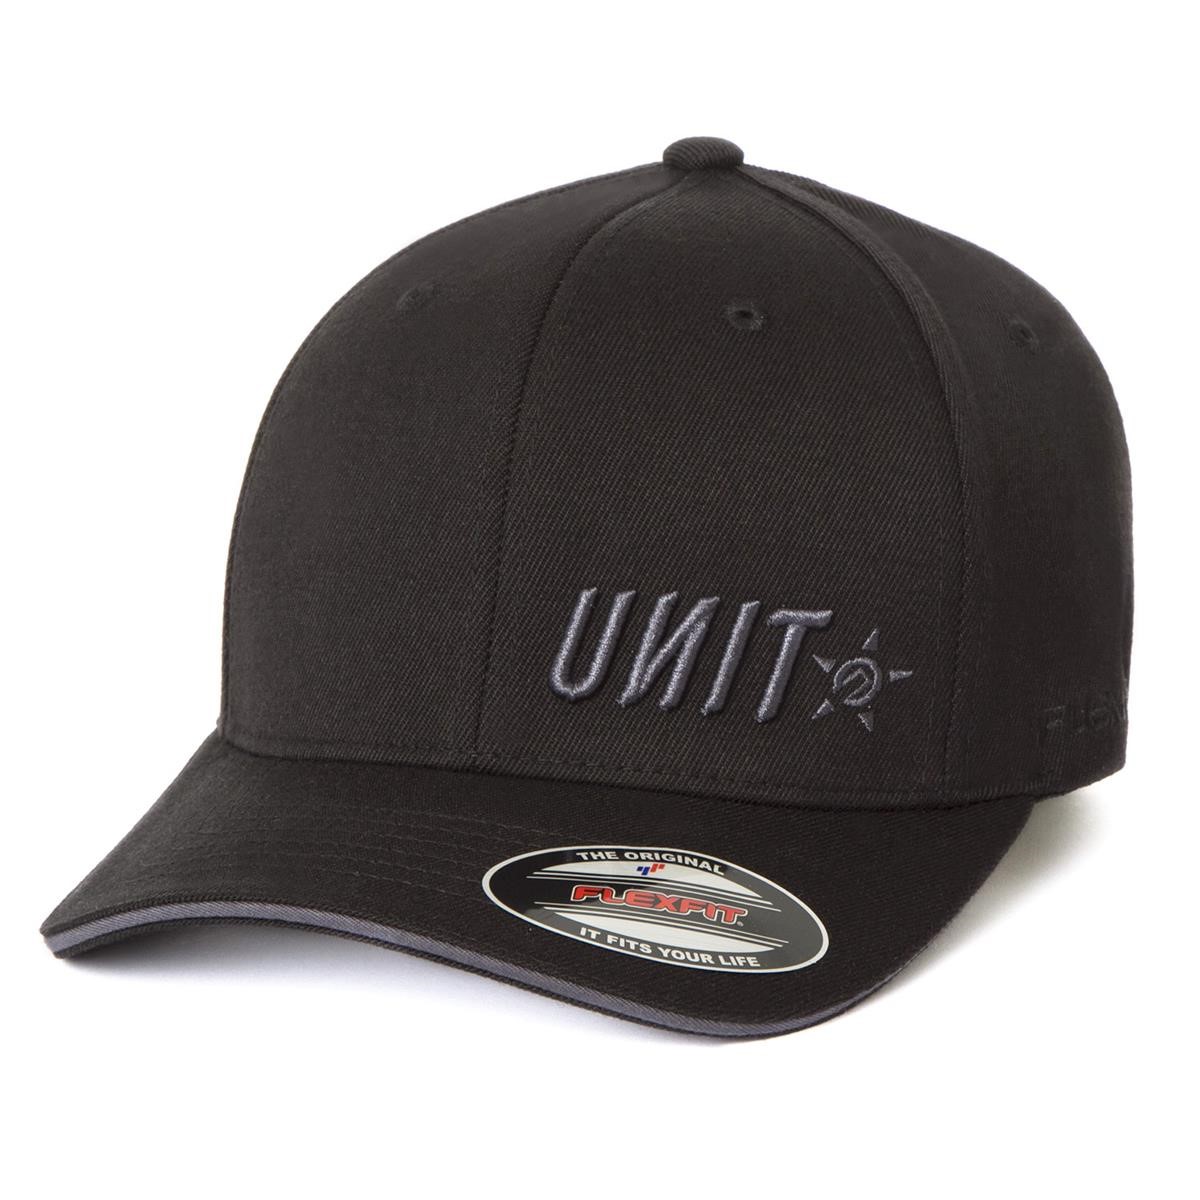 Unit Cap Base Black